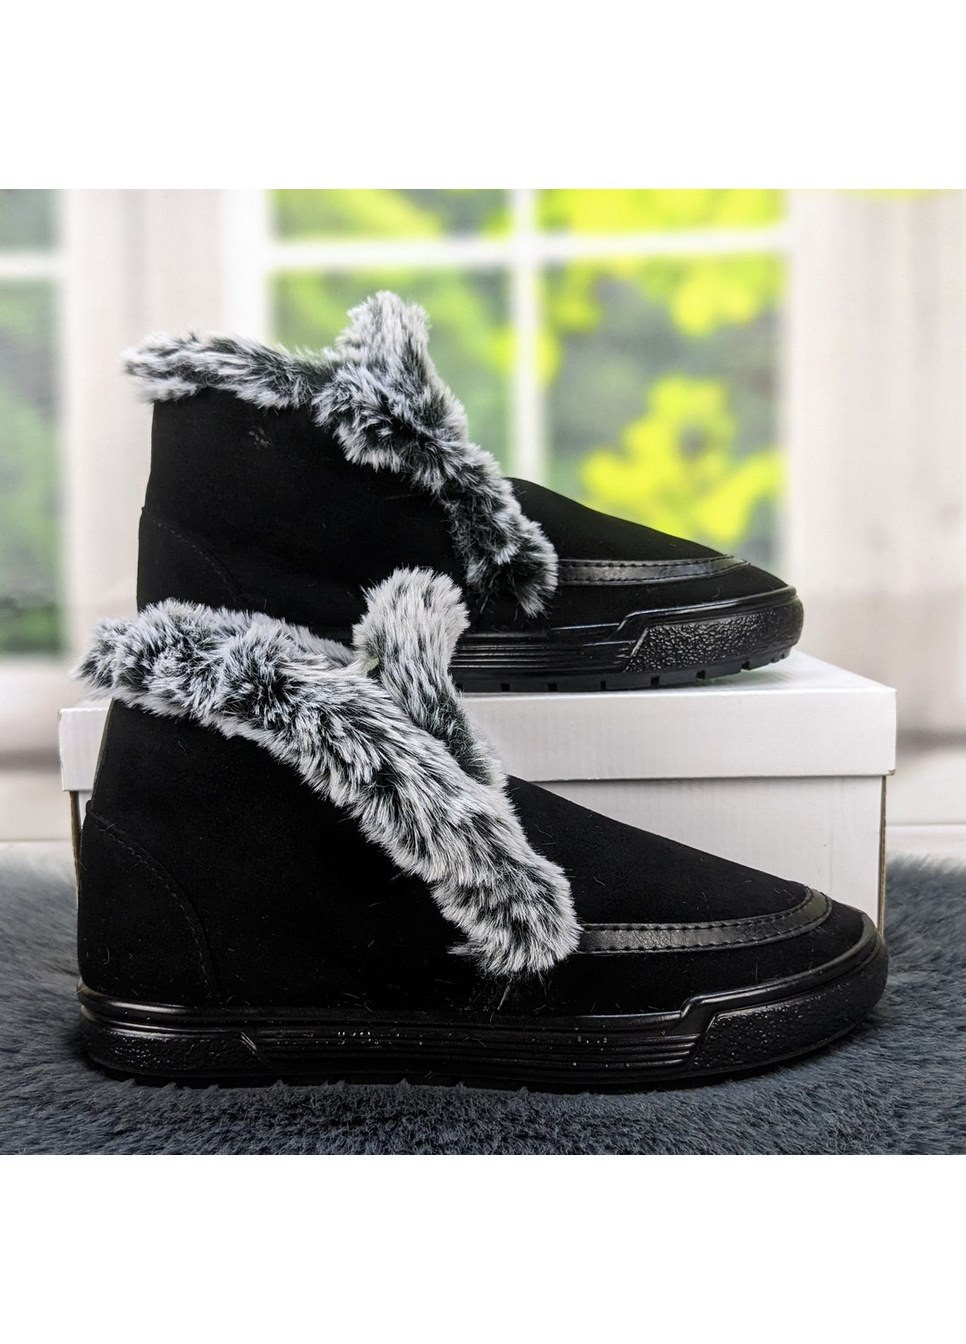 Зимние ботинки женские зимние черные замшевые Litma из искусственной замши